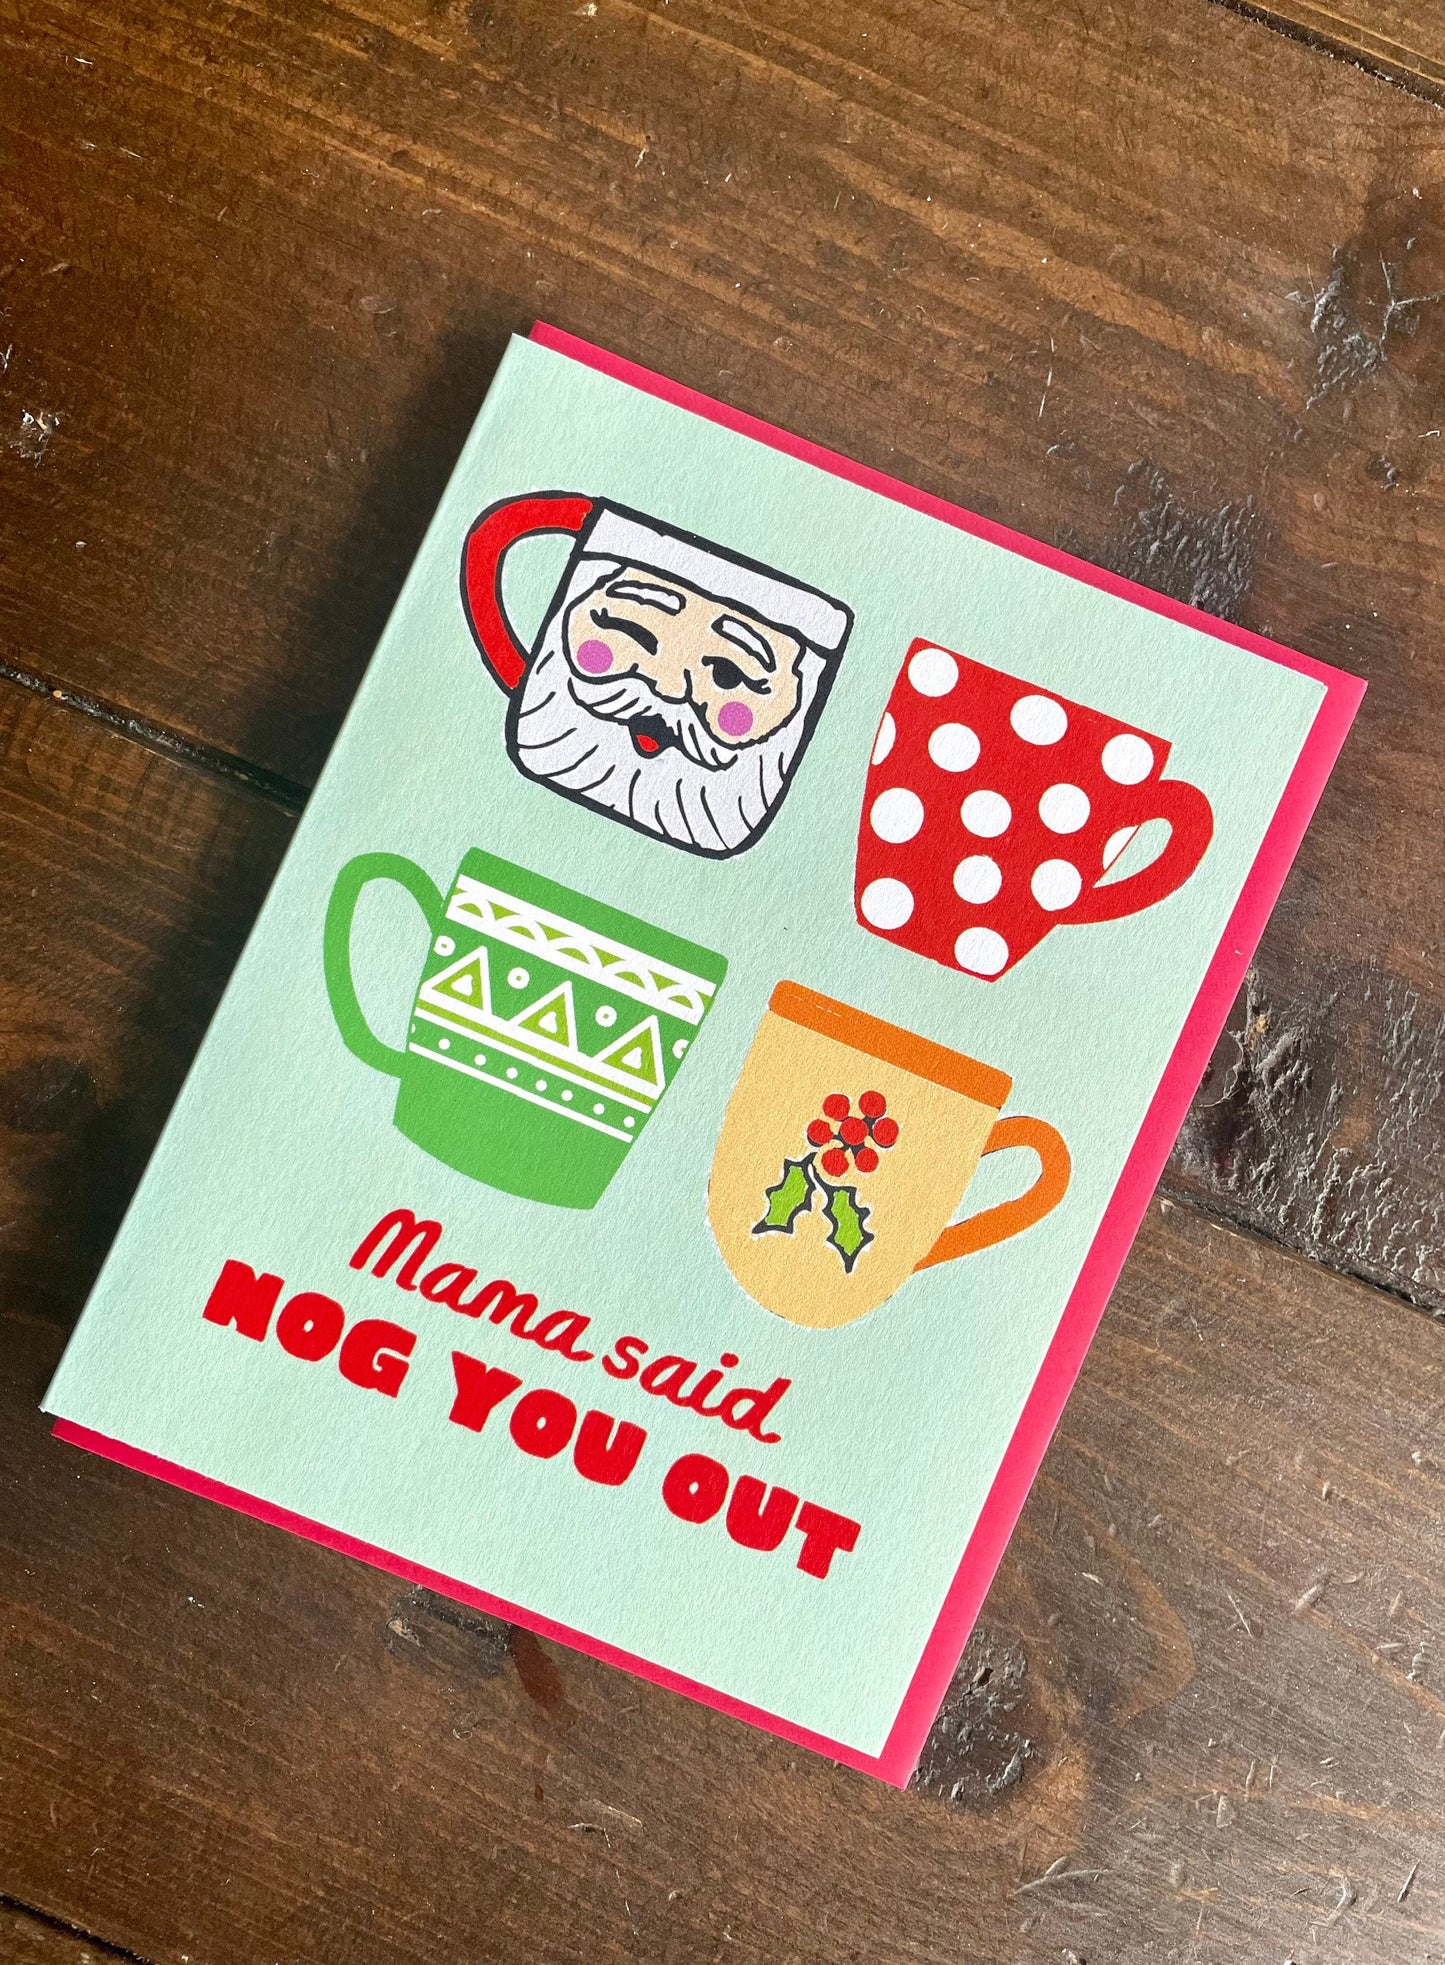 Eggnog Mug Christmas Card - Funny Christmas Card, LLcoolJ hip hop Card, Mama said knock you out, funny christmas card with foiled lettering